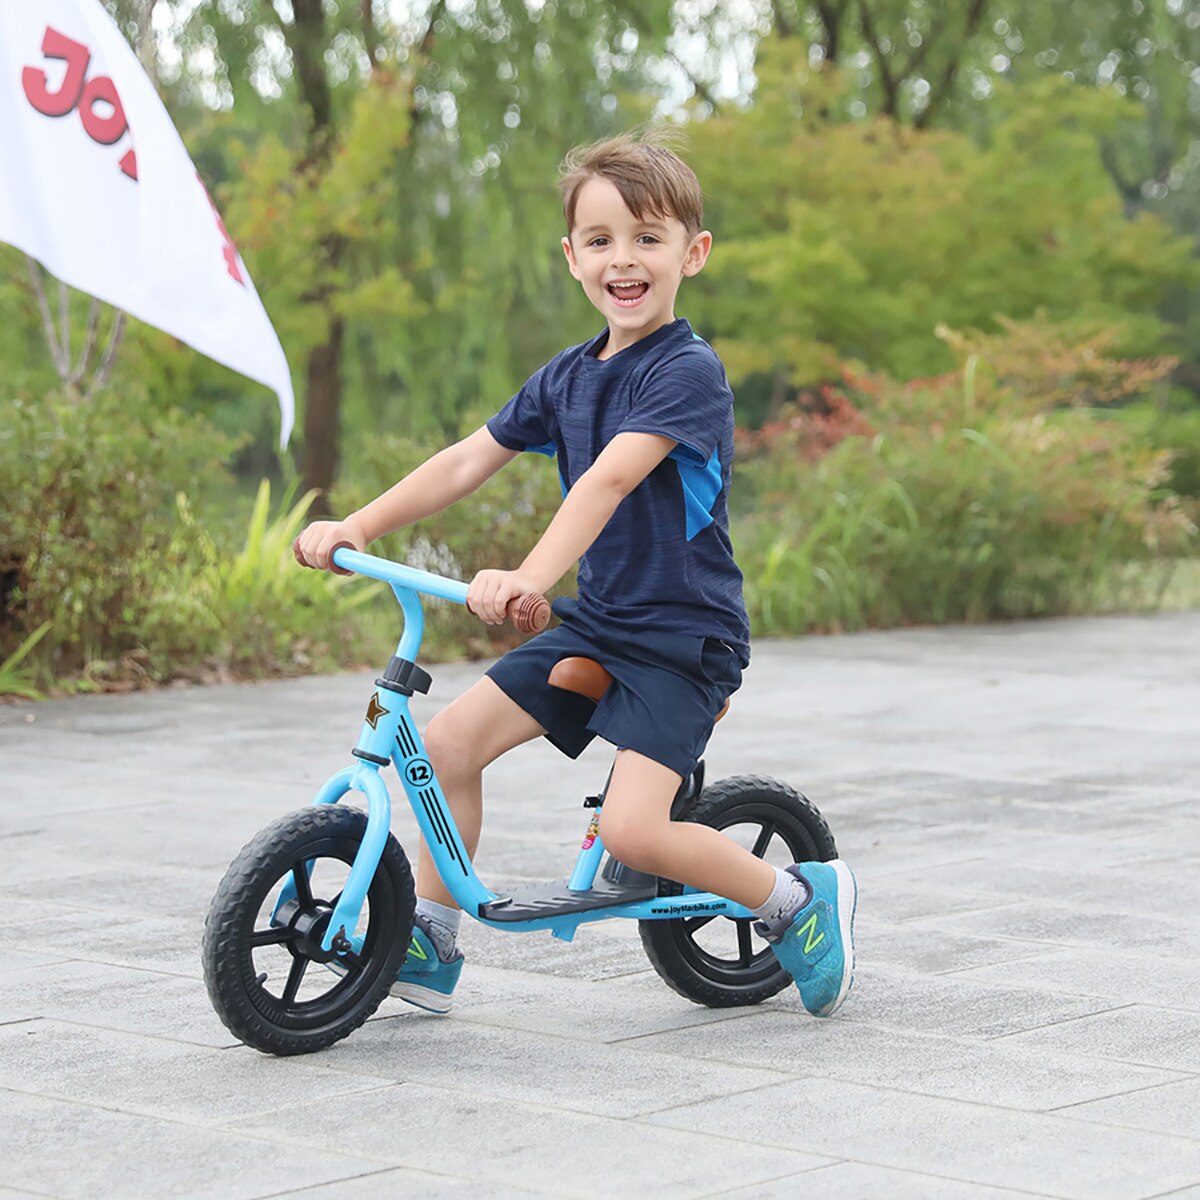 مستودع الاتحاد الأوروبي/CN/الولايات المتحدة دراجة توازن 10 و12 بوصة دراجة ركوب أطفال خفيفة الوزن 1-3 سنوات يتعلم الأطفال ركوب الدراجة الرياضية المتوازنة